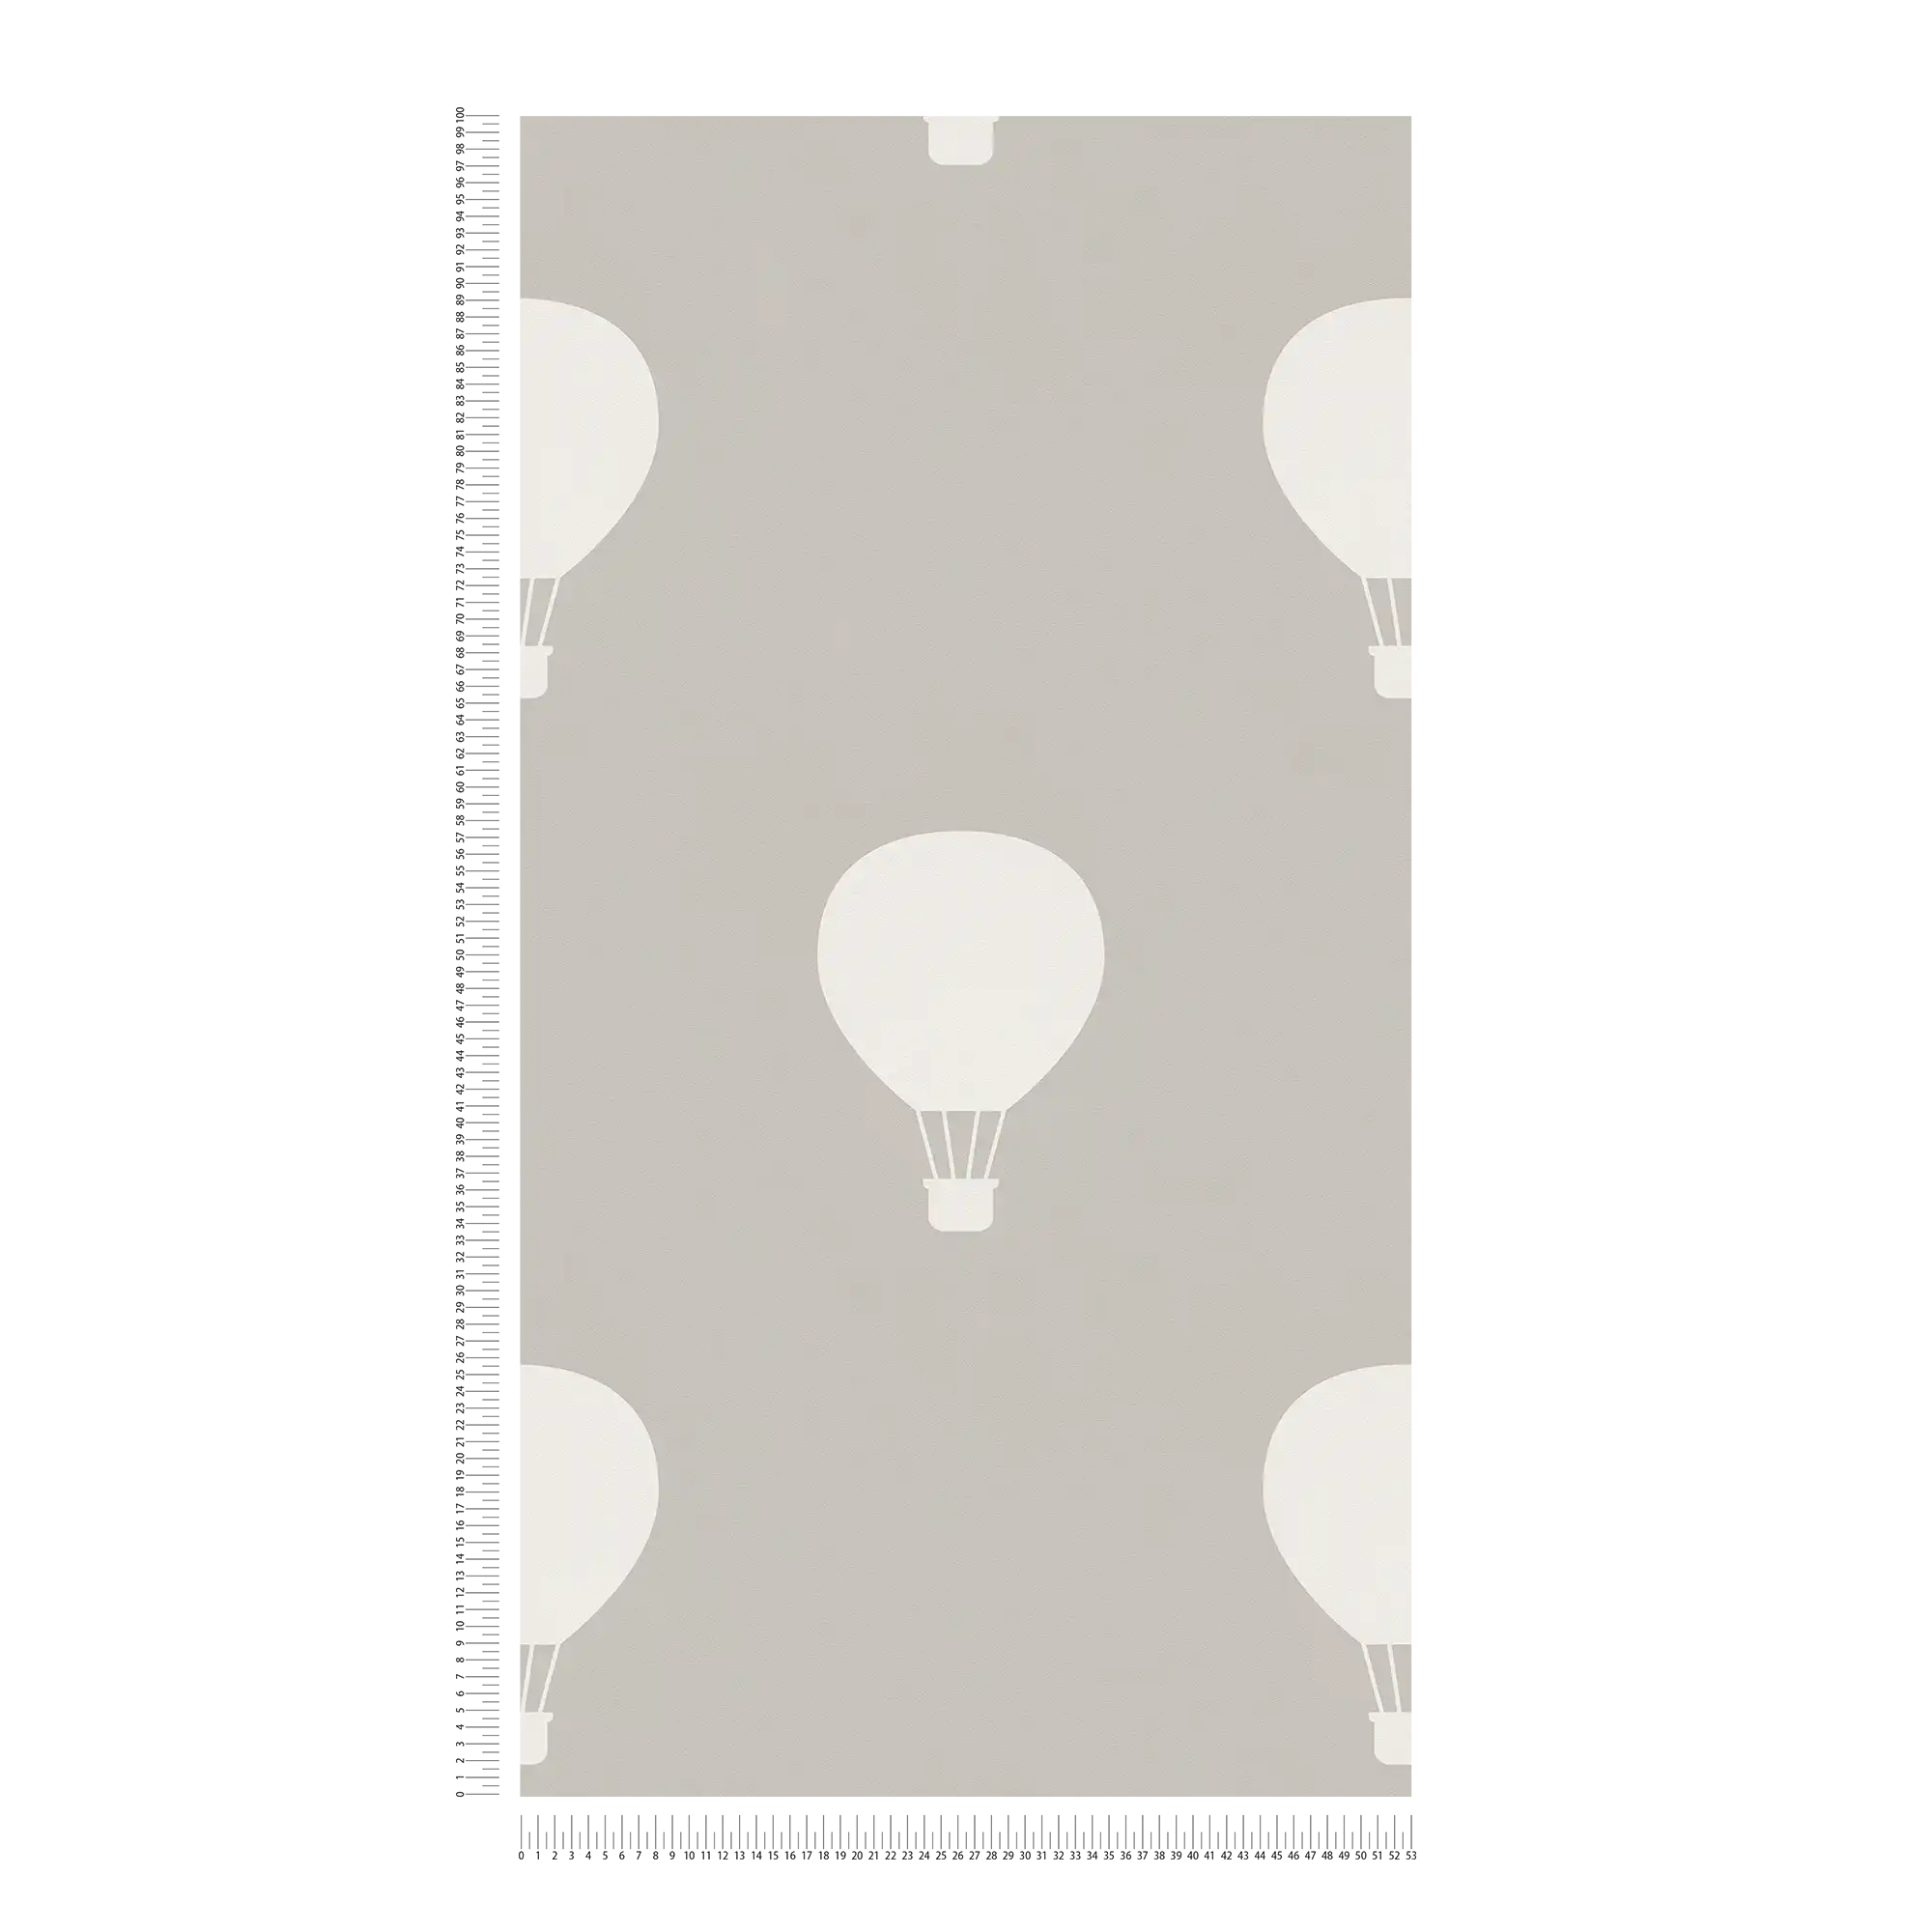             Non-woven wallpaper with hot balloons for Nursery - grey, cream
        